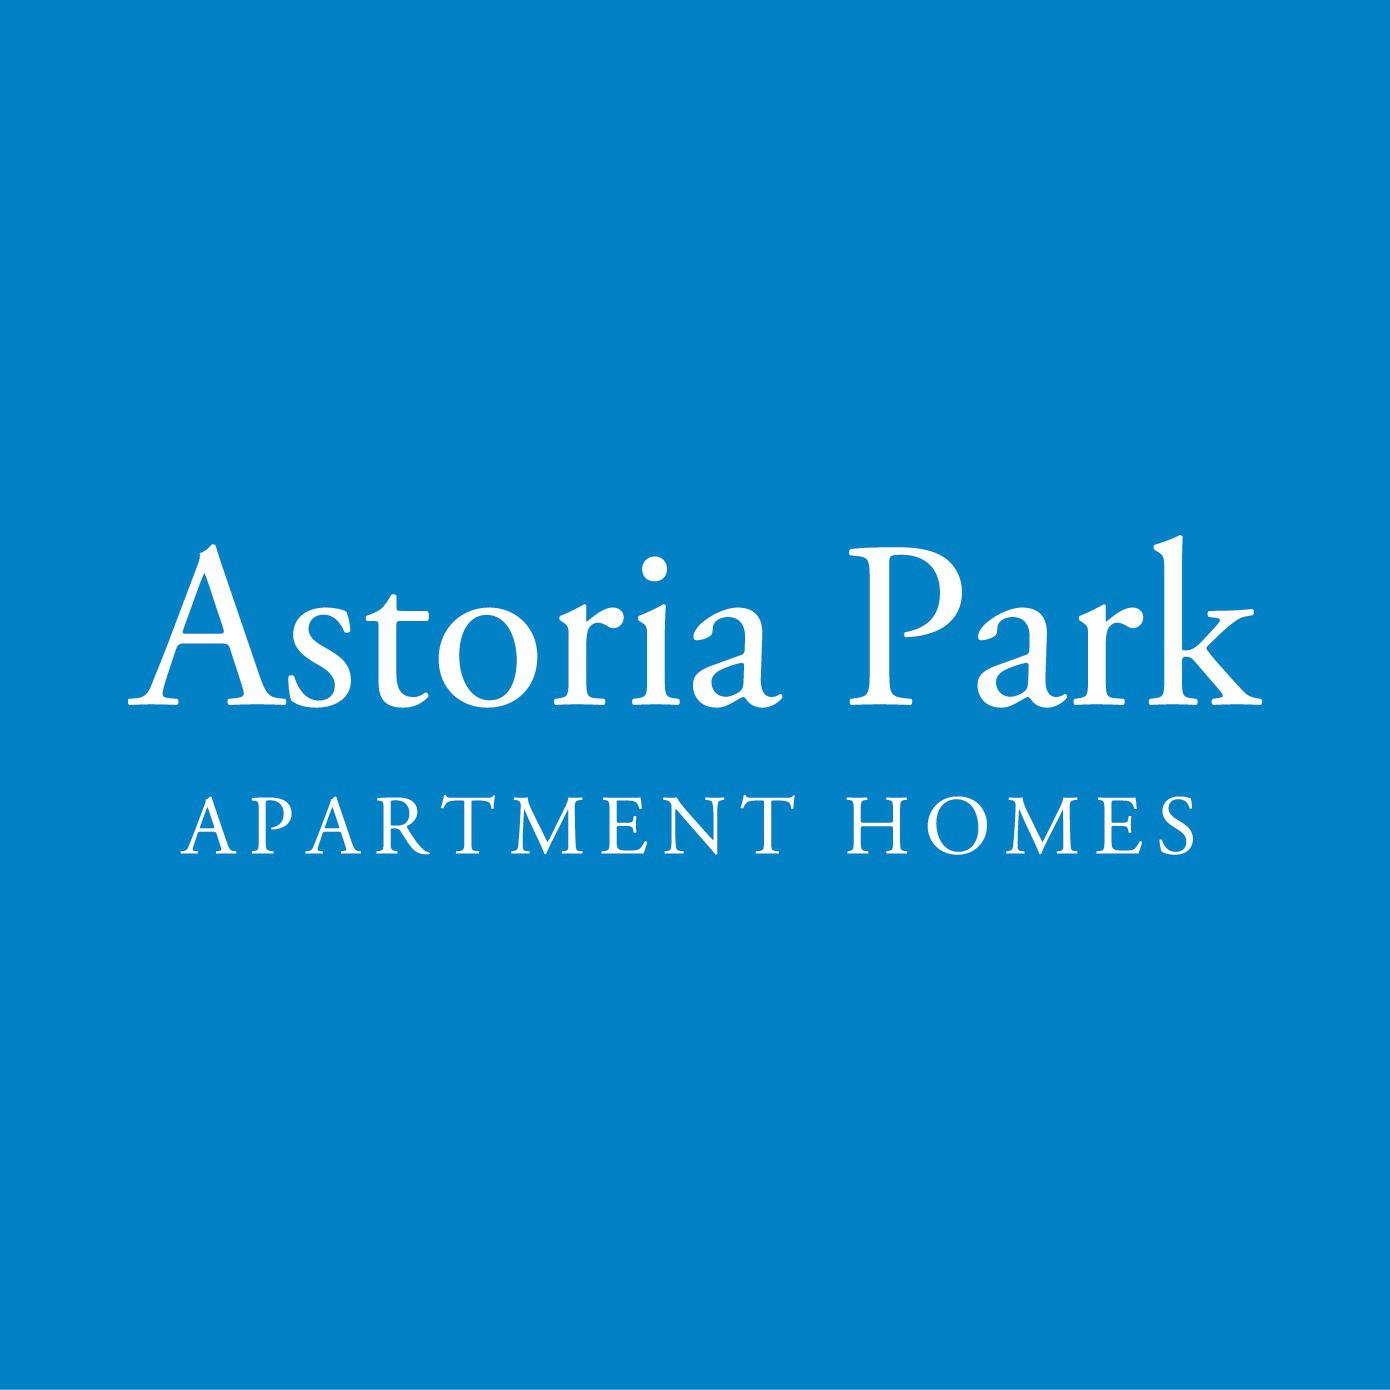 Astoria Park Apartment Homes